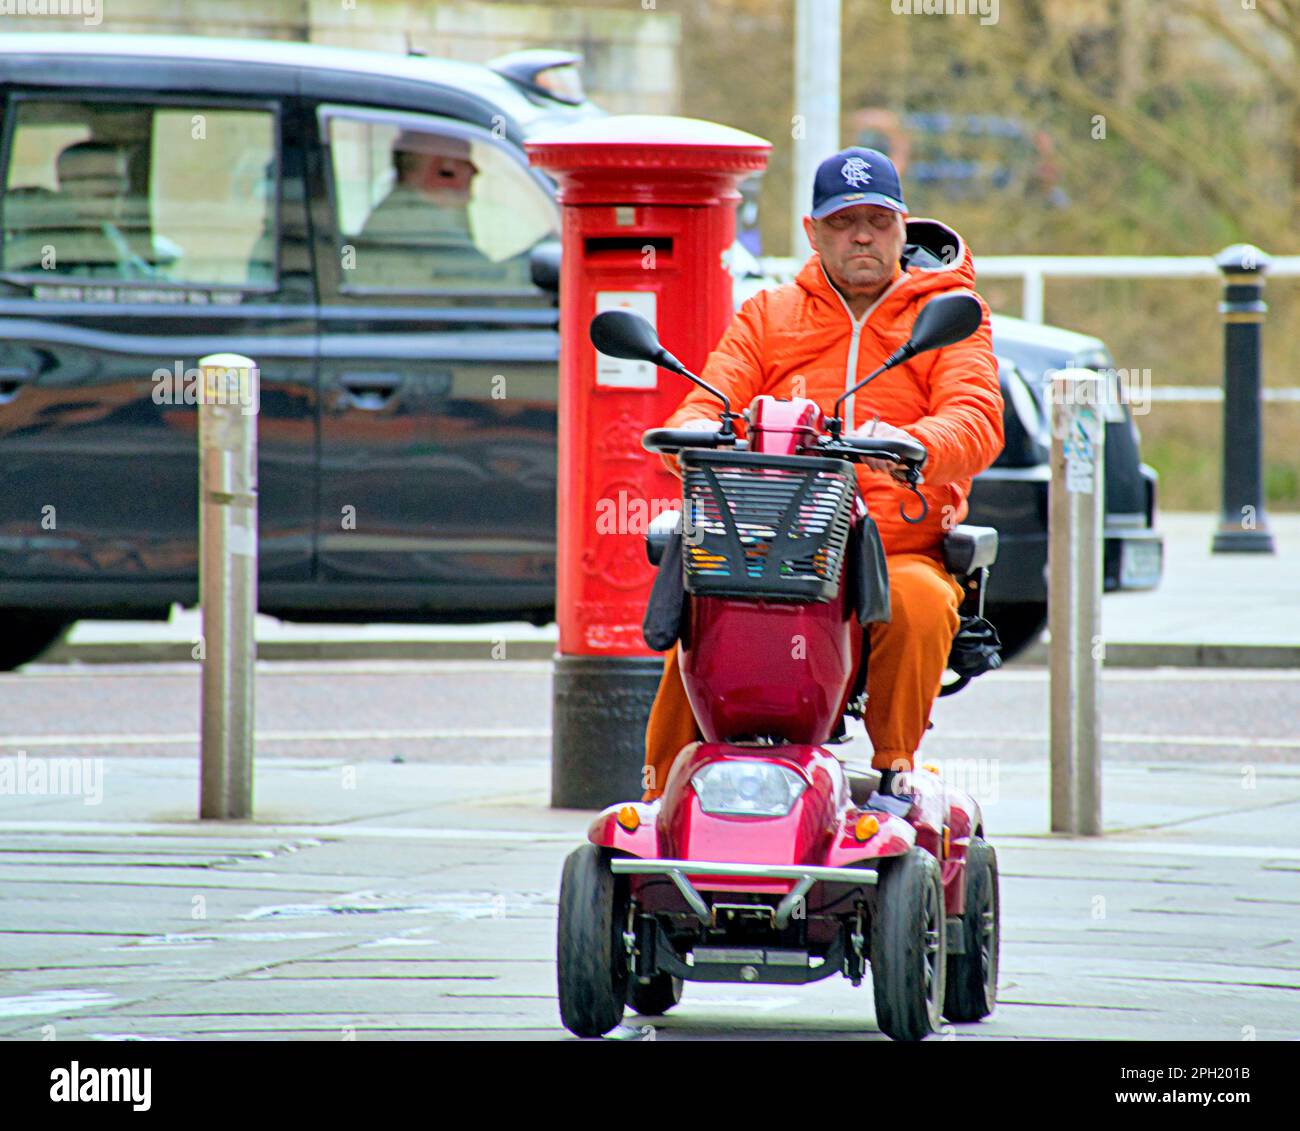 homme en costume orange sur scooter de mobilité Banque D'Images